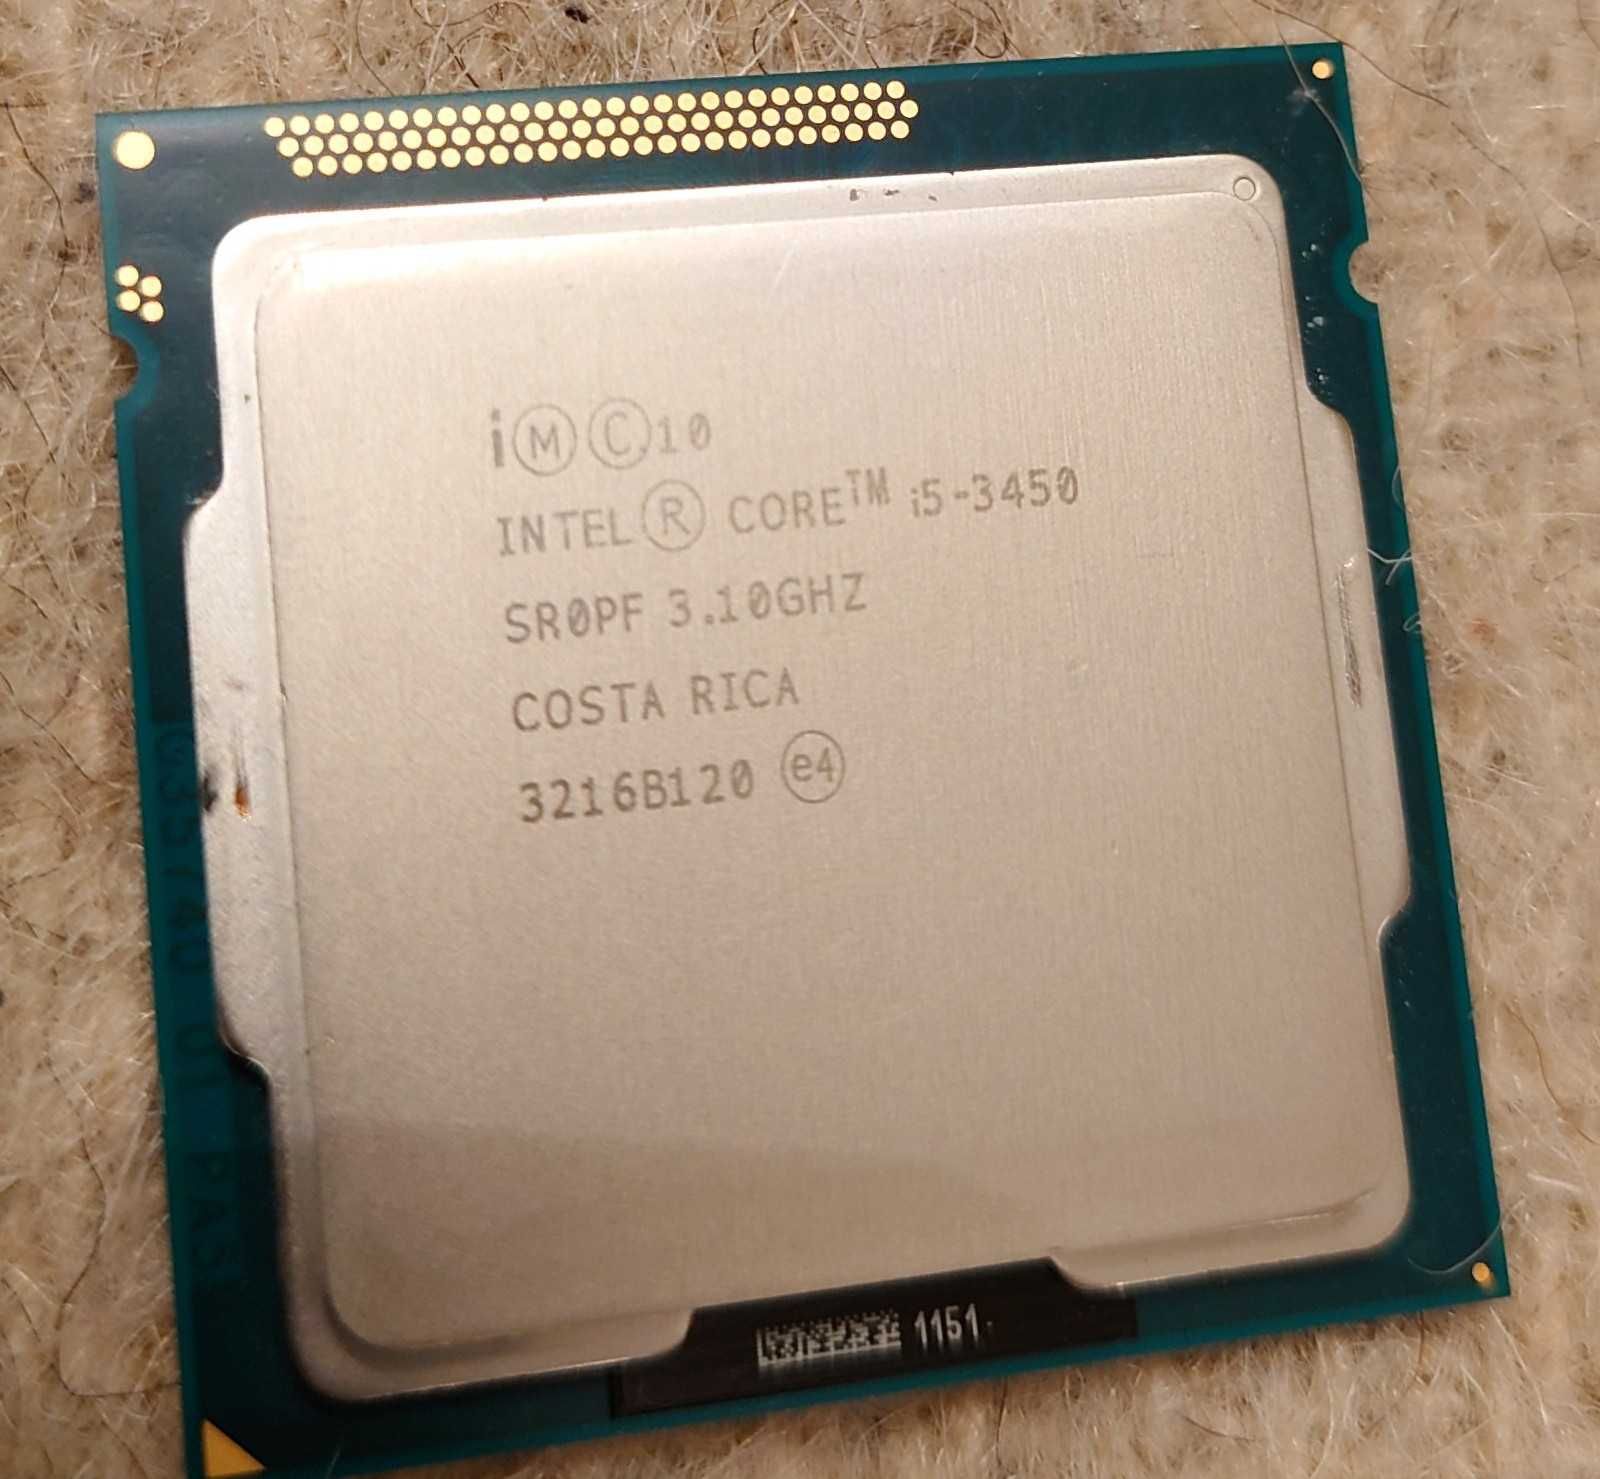 Procesor Intel i5-3450 socket LGA1155